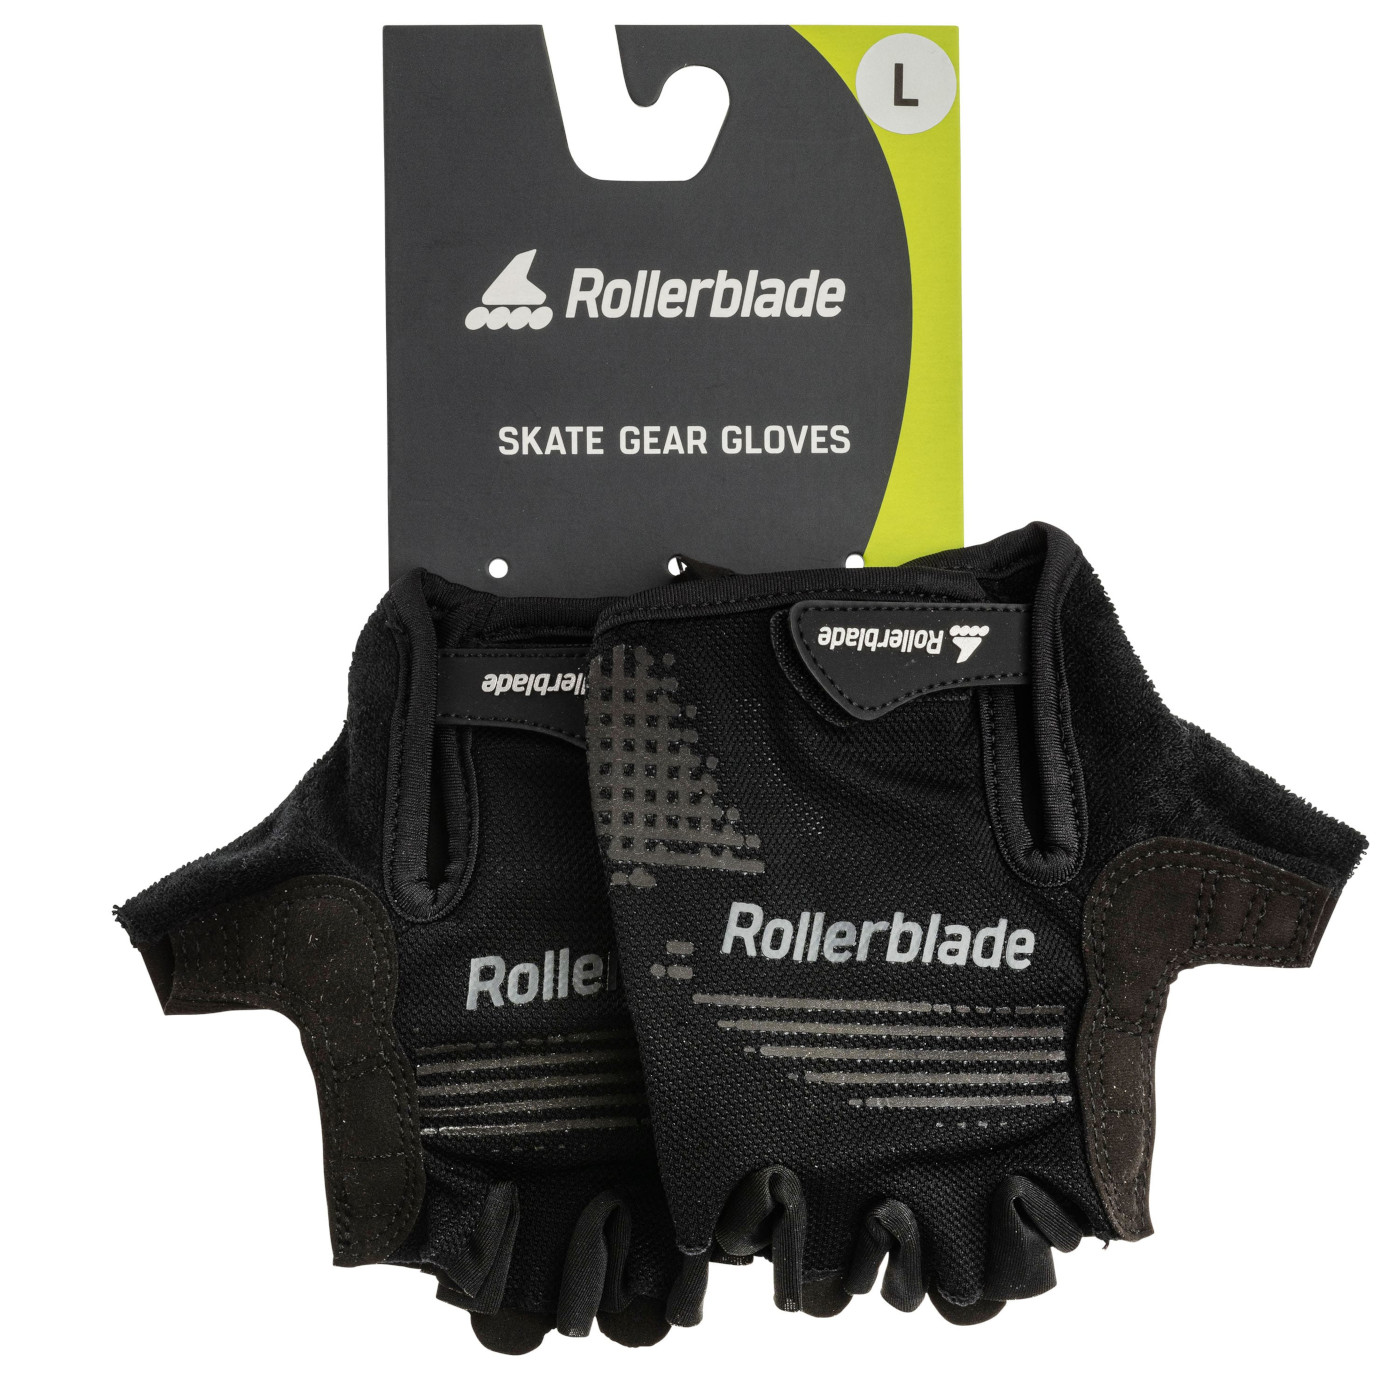 Produktbild von Rollerblade Skate Gear Gloves - Handschützer - schwarz